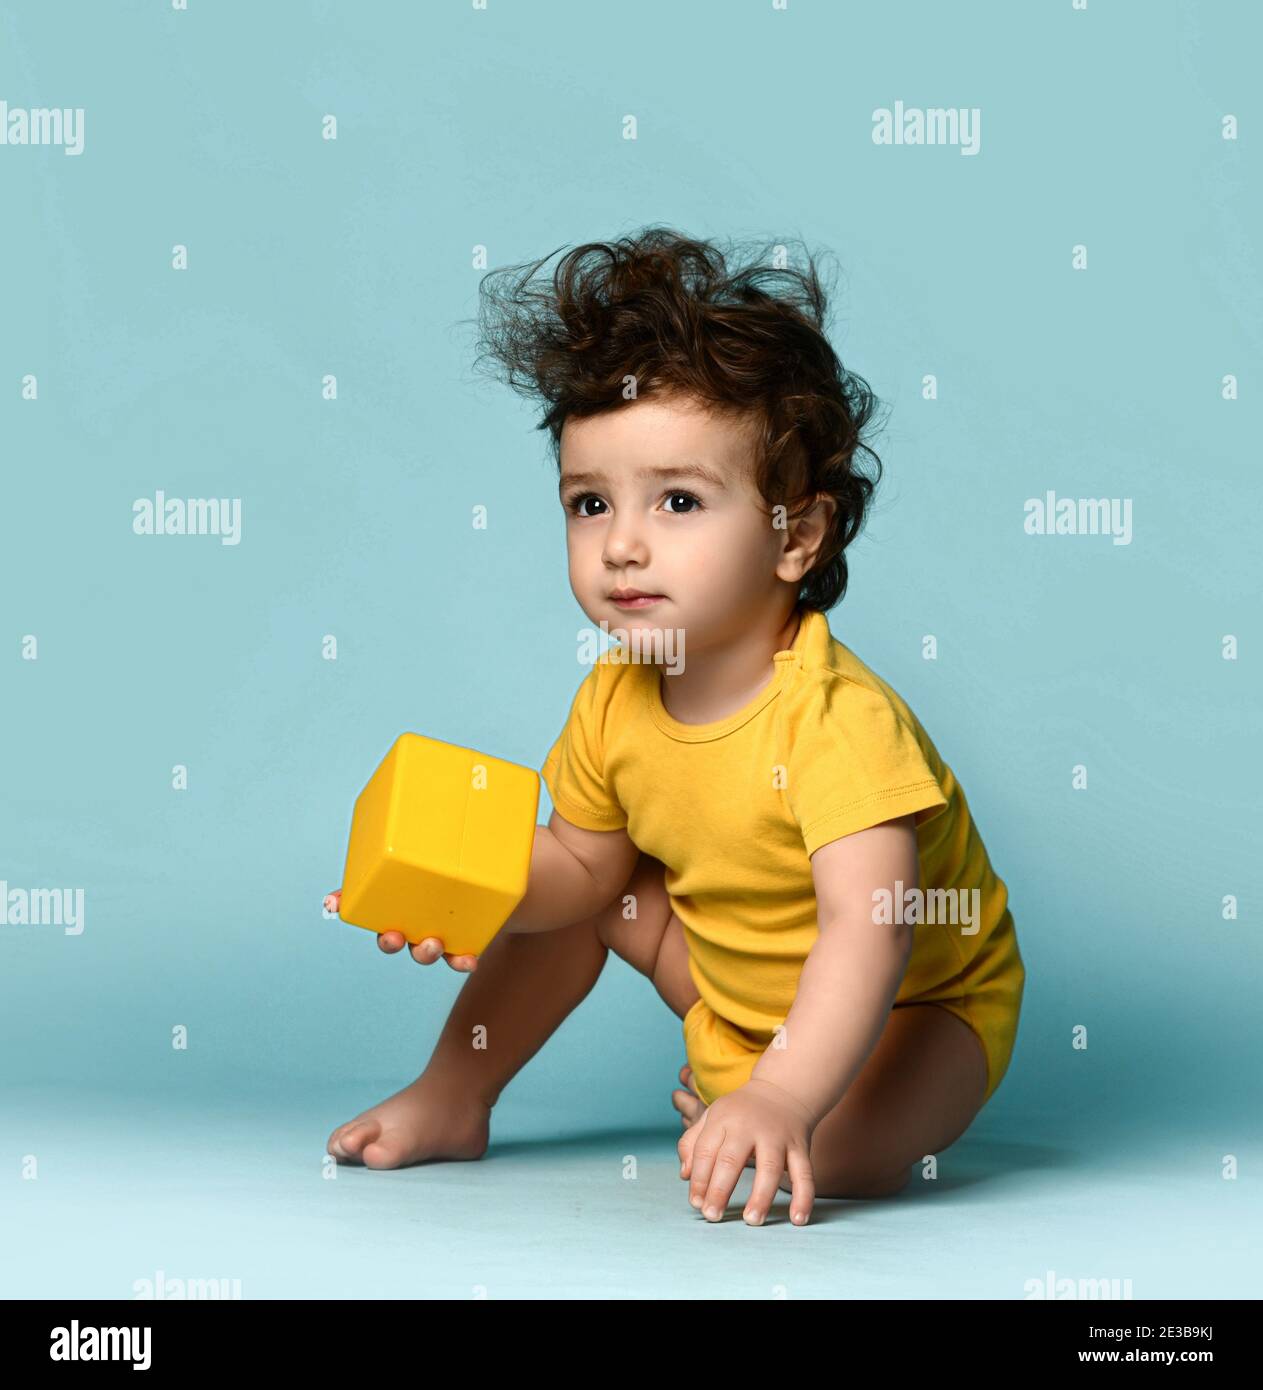 Kleine niedliche lockig haarige Baby junge Kleinkind in gelb bequem Jumpsuit sitzt auf dem Boden und spielt mit gelben Würfel Spielzeug Stockfoto